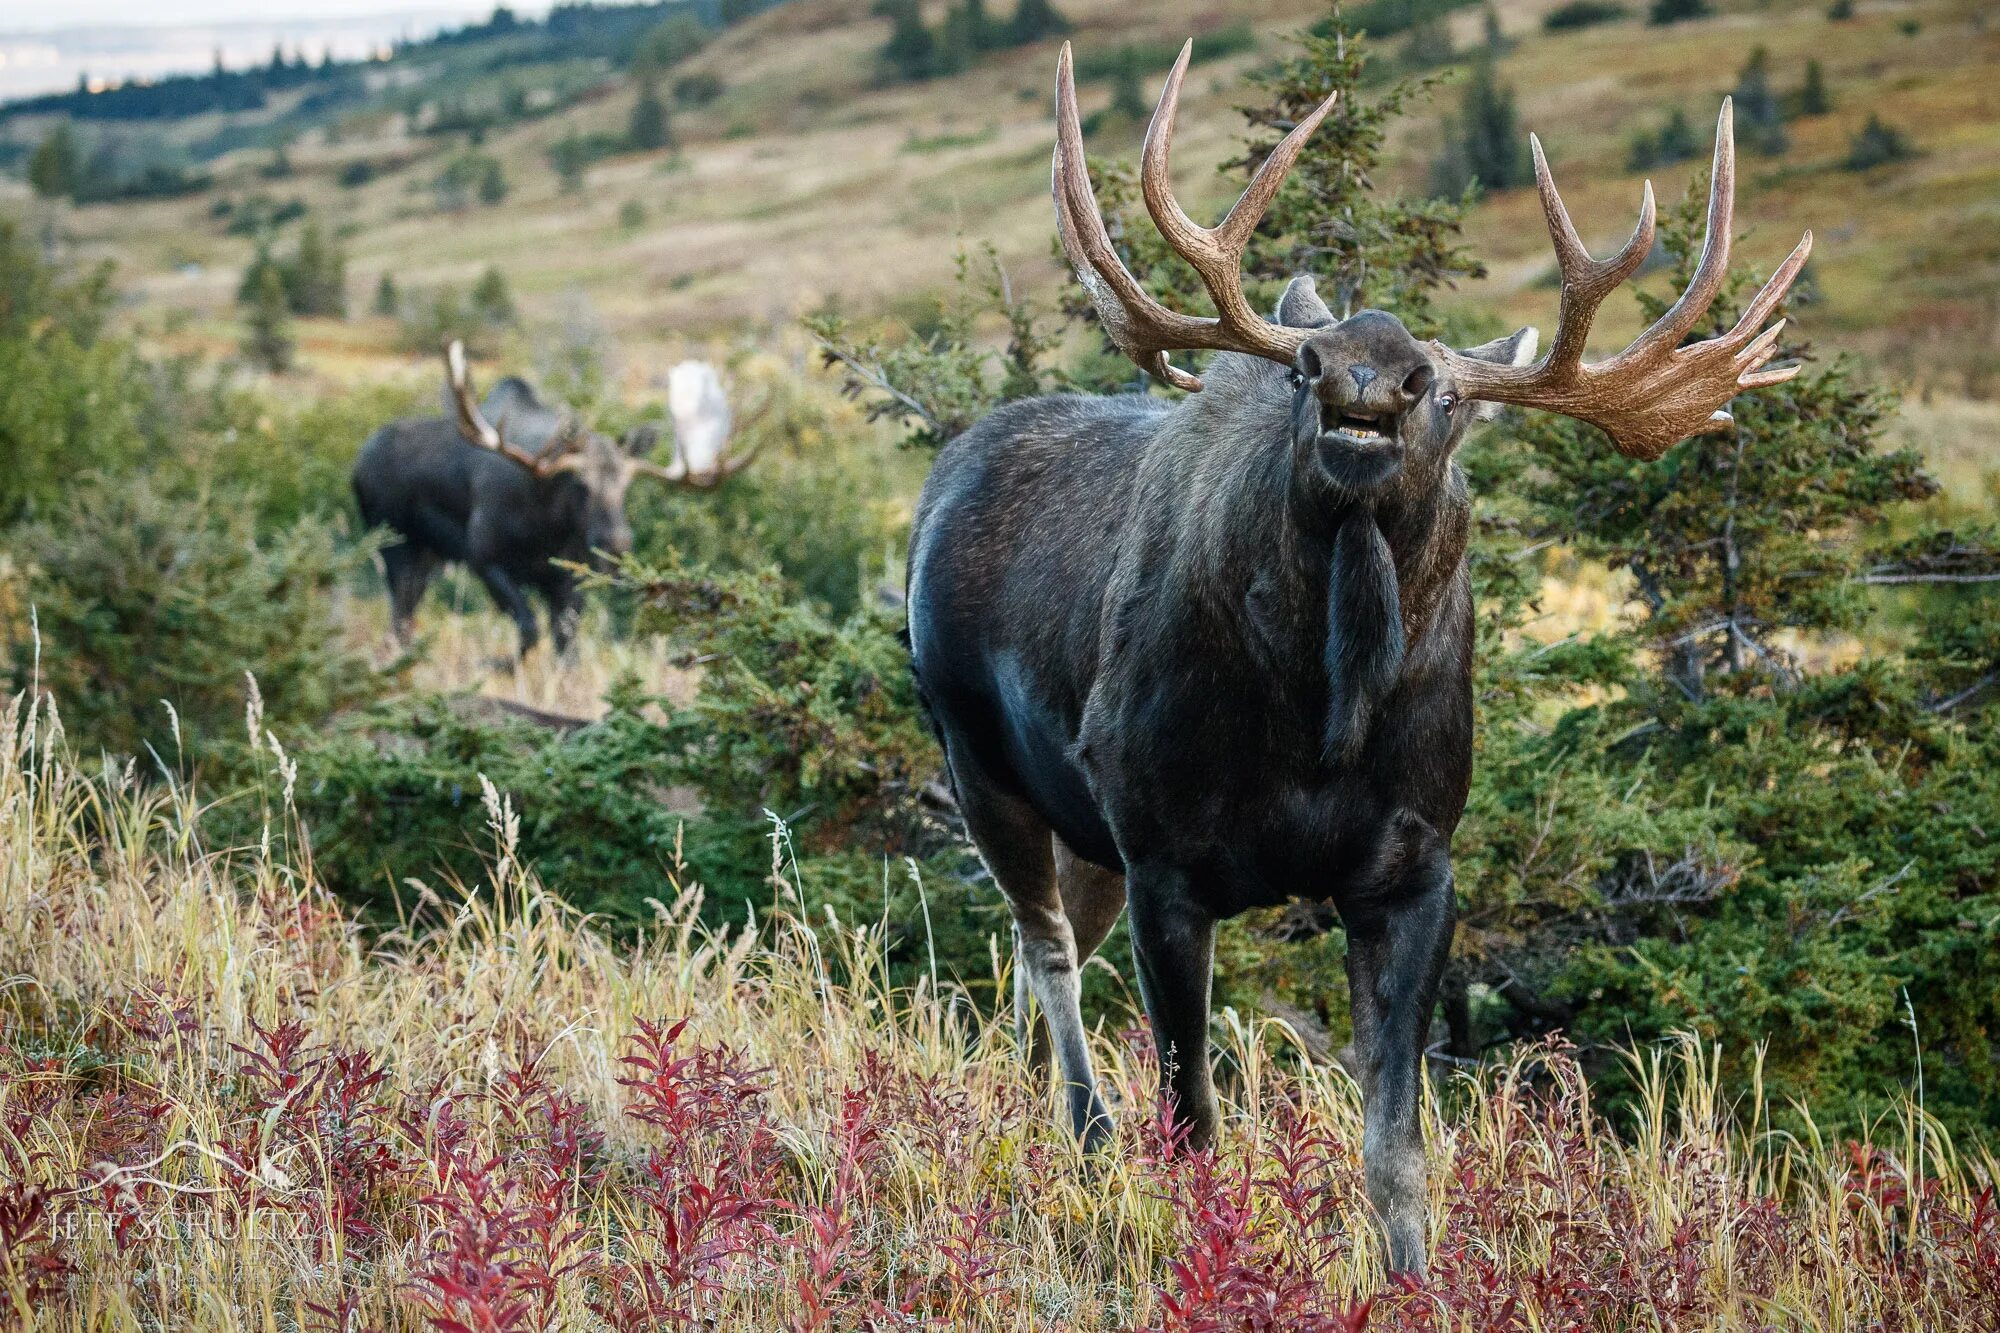 Alaska Wild Life. Аляска природа животный мир. Аляска заповедник Дикая природа. Marniimods: Wildlife.